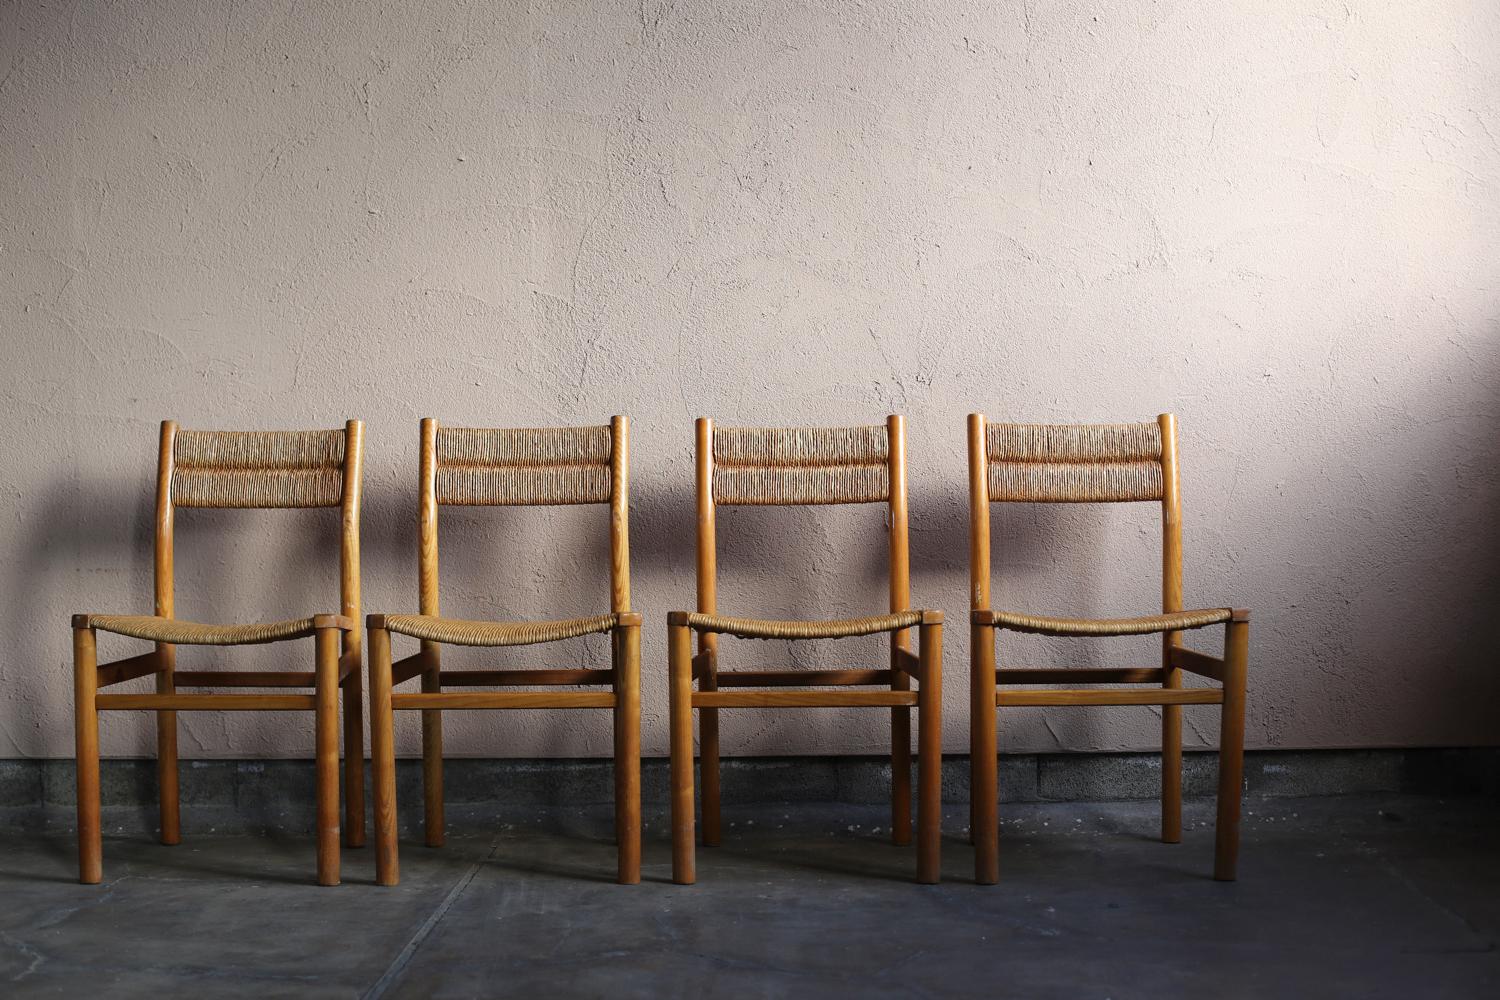 Die vier Stühle der Serie Week-end wurden in den 1950er Jahren in Frankreich von dem Designer Pierre Gautier-Delaye entworfen und anschließend von Vergnere bearbeitet. Er besteht aus einer Struktur mit vier Beinen aus Eschenholz, einem Sitz und